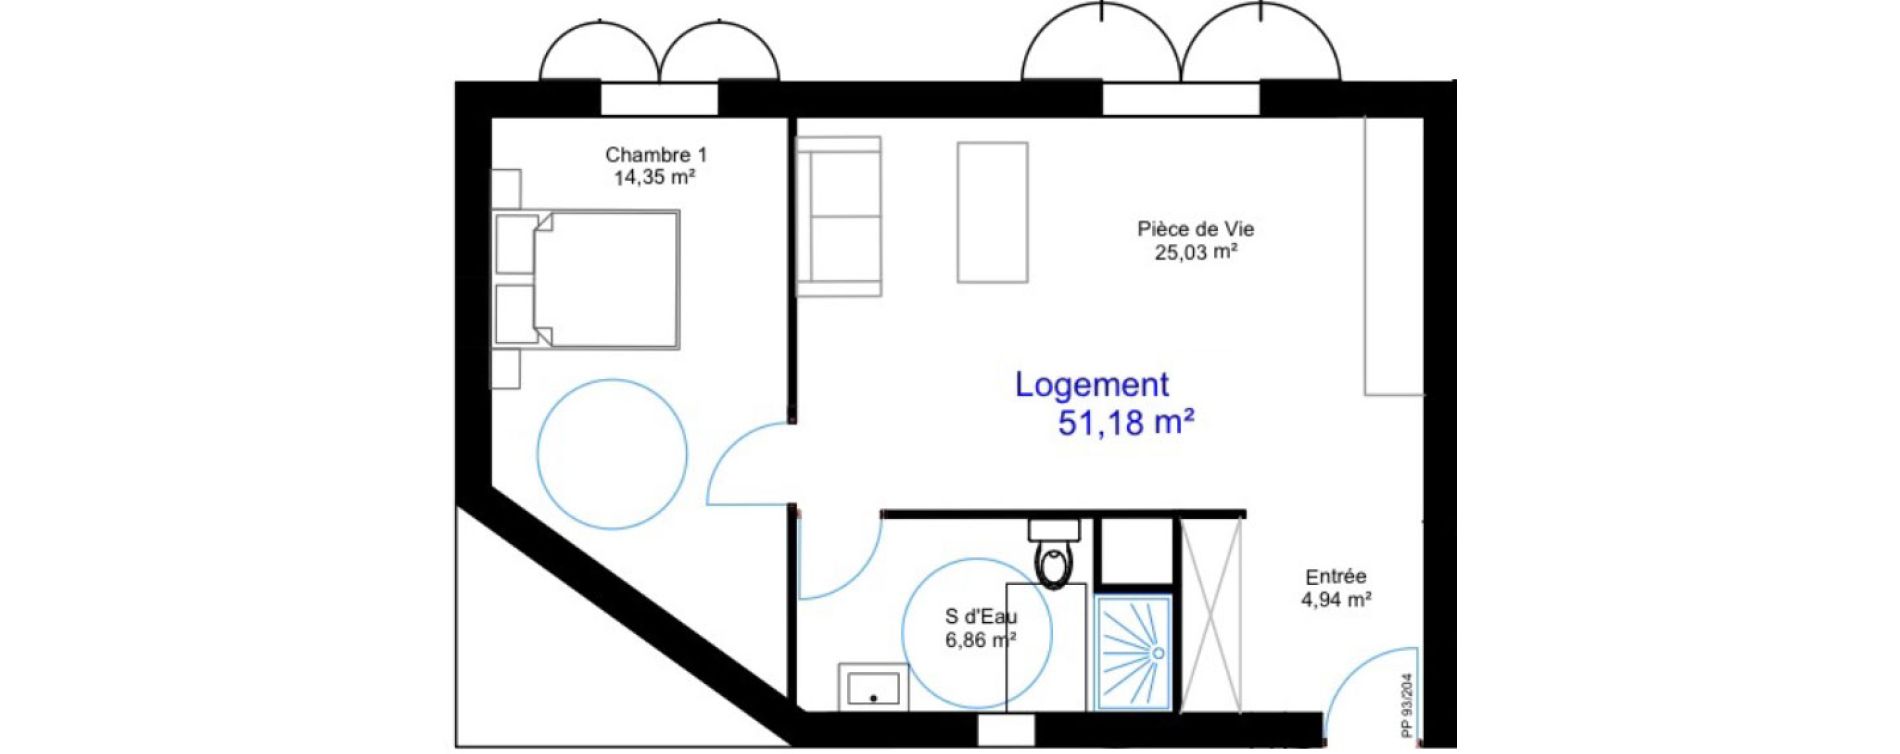 Appartement T2 de 51,18 m2 aux Sables-D'Olonne Le chateau d olonne